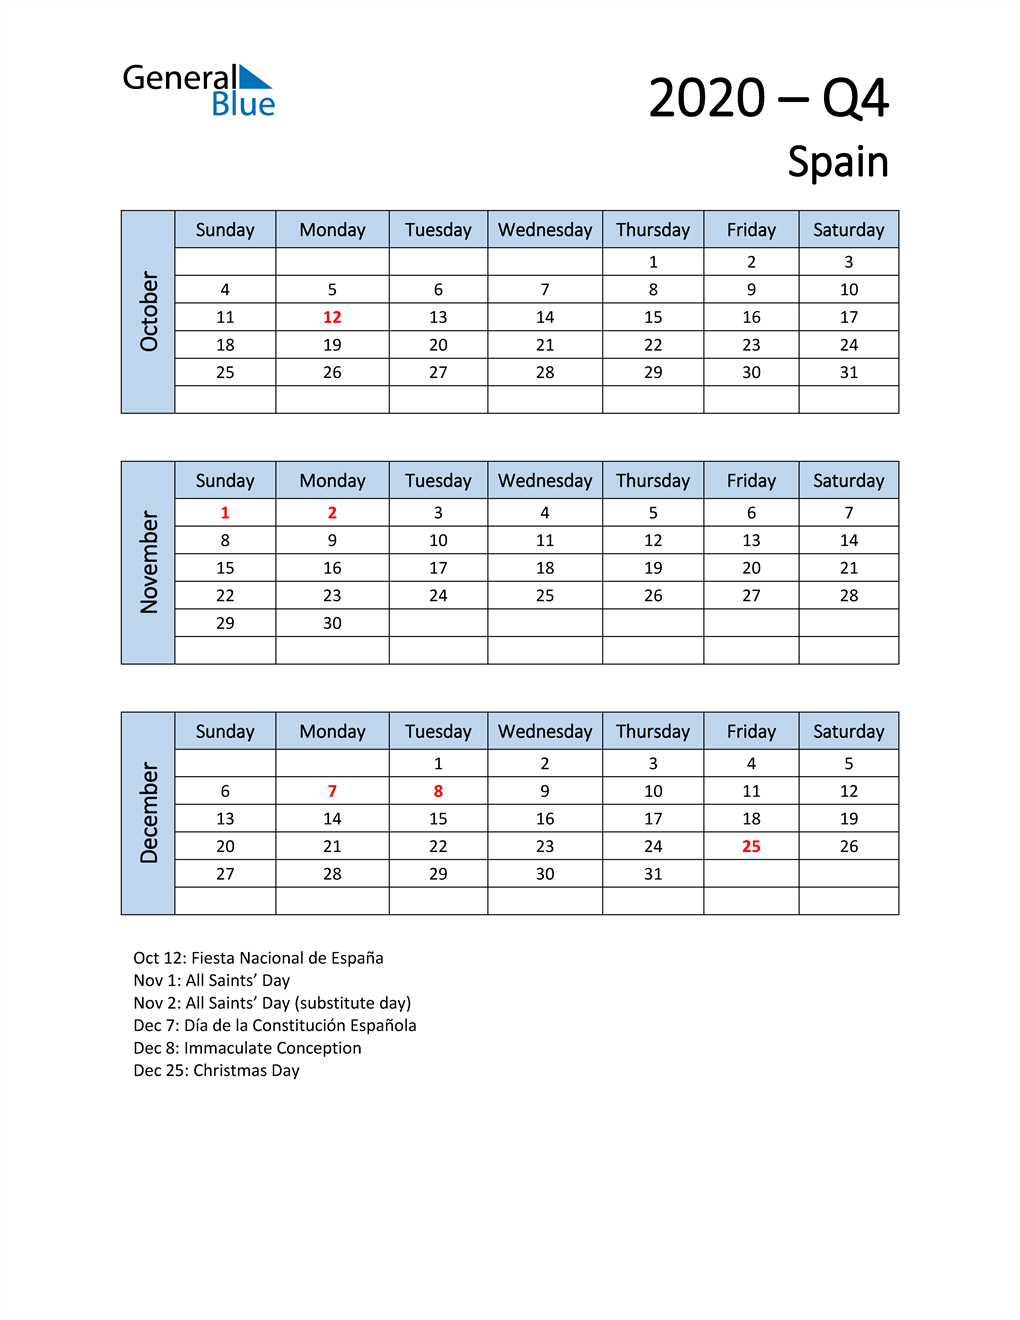  Free Q4 2020 Calendar for Spain